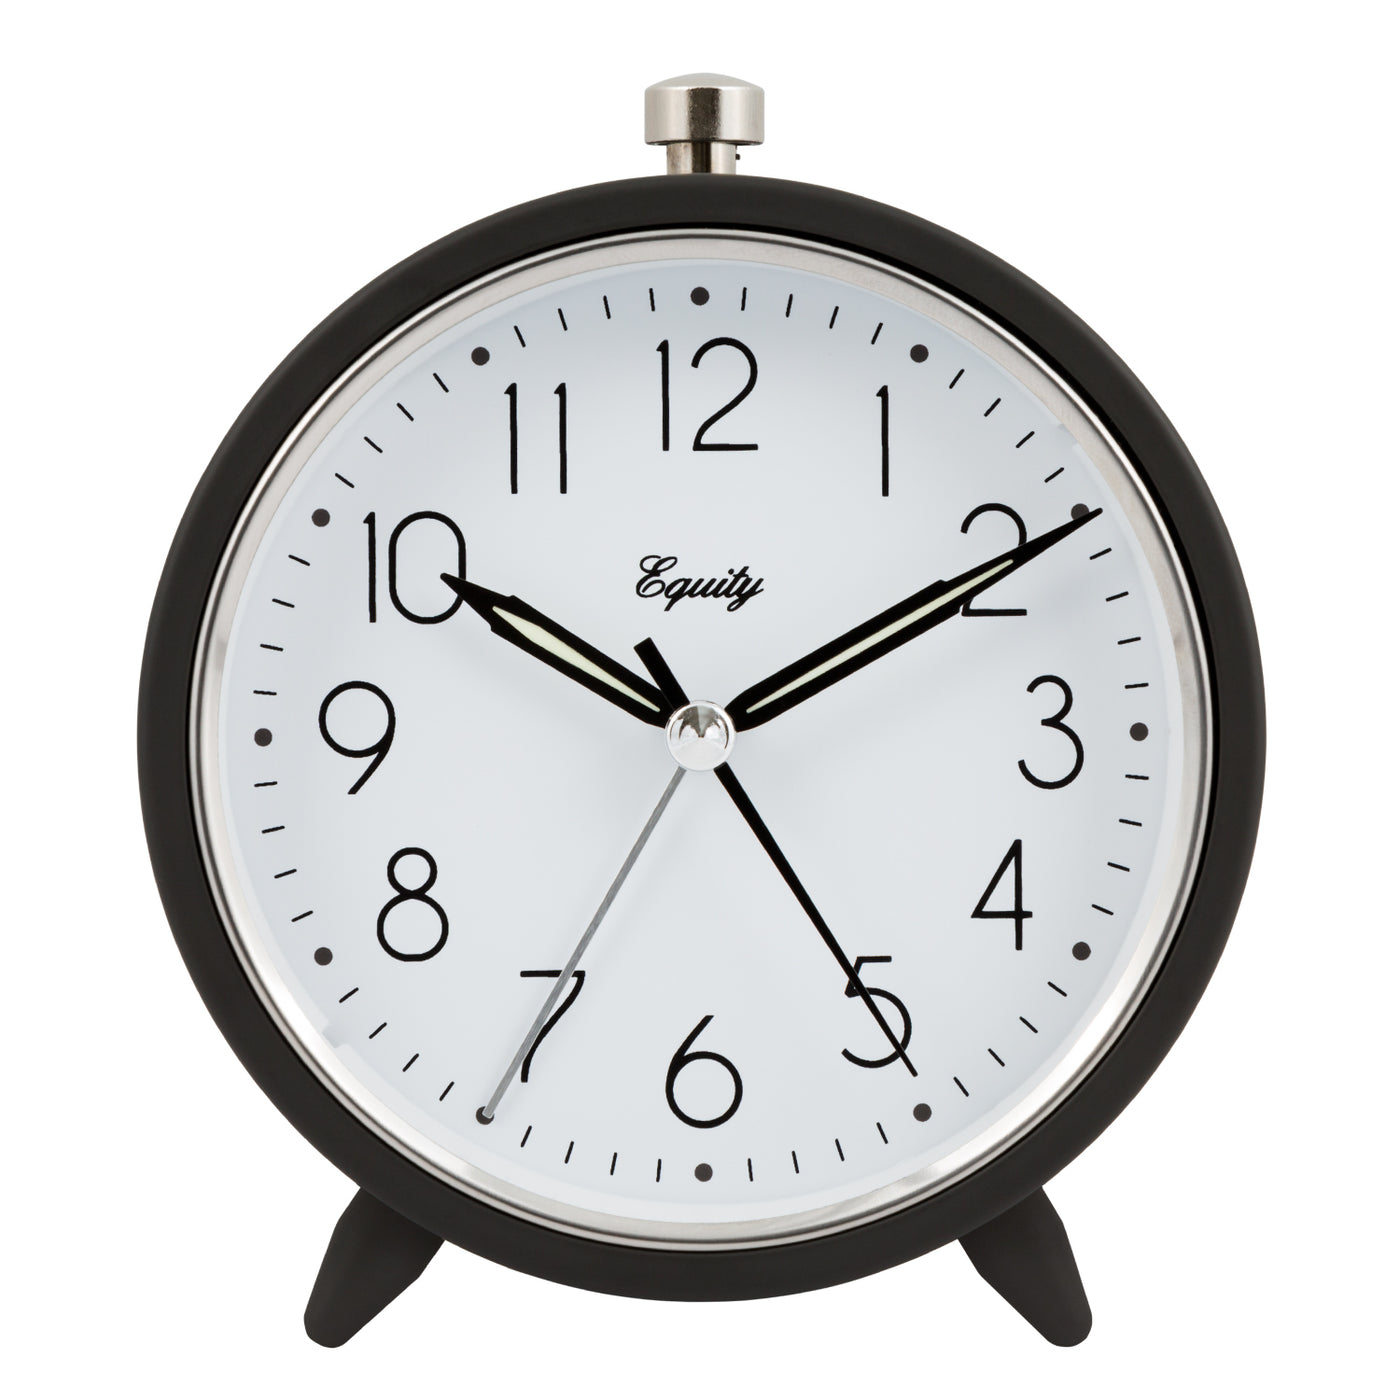 20090 Analog Quartz Alarm Clock